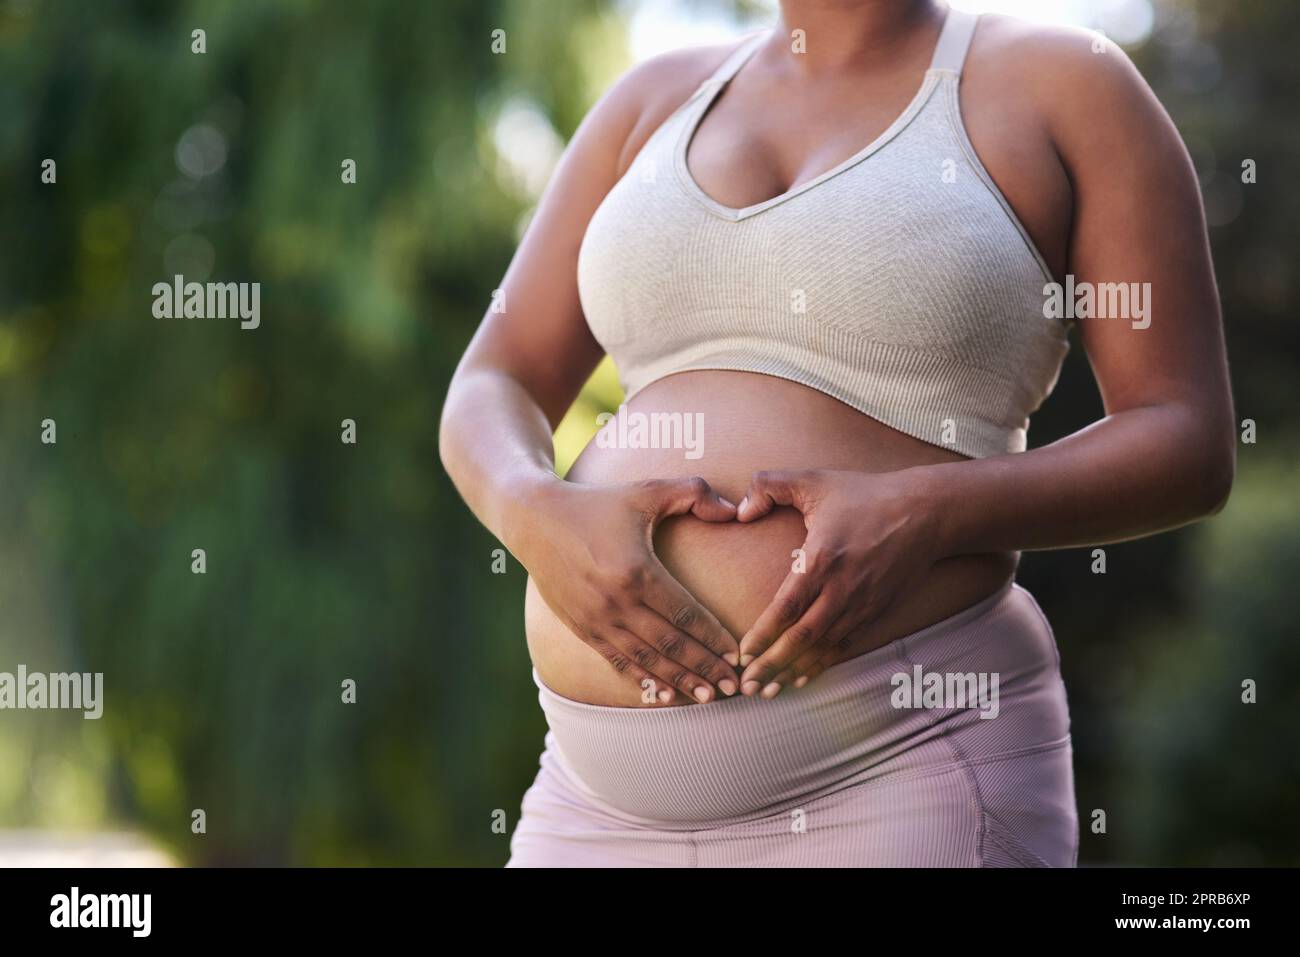 Meine Liebe zu Ihnen ist es, was mich motiviert, gesunde Entscheidungen zu treffen. Eine Frau, die eine Herzform auf ihrem schwanger Bauch bildet. Stockfoto